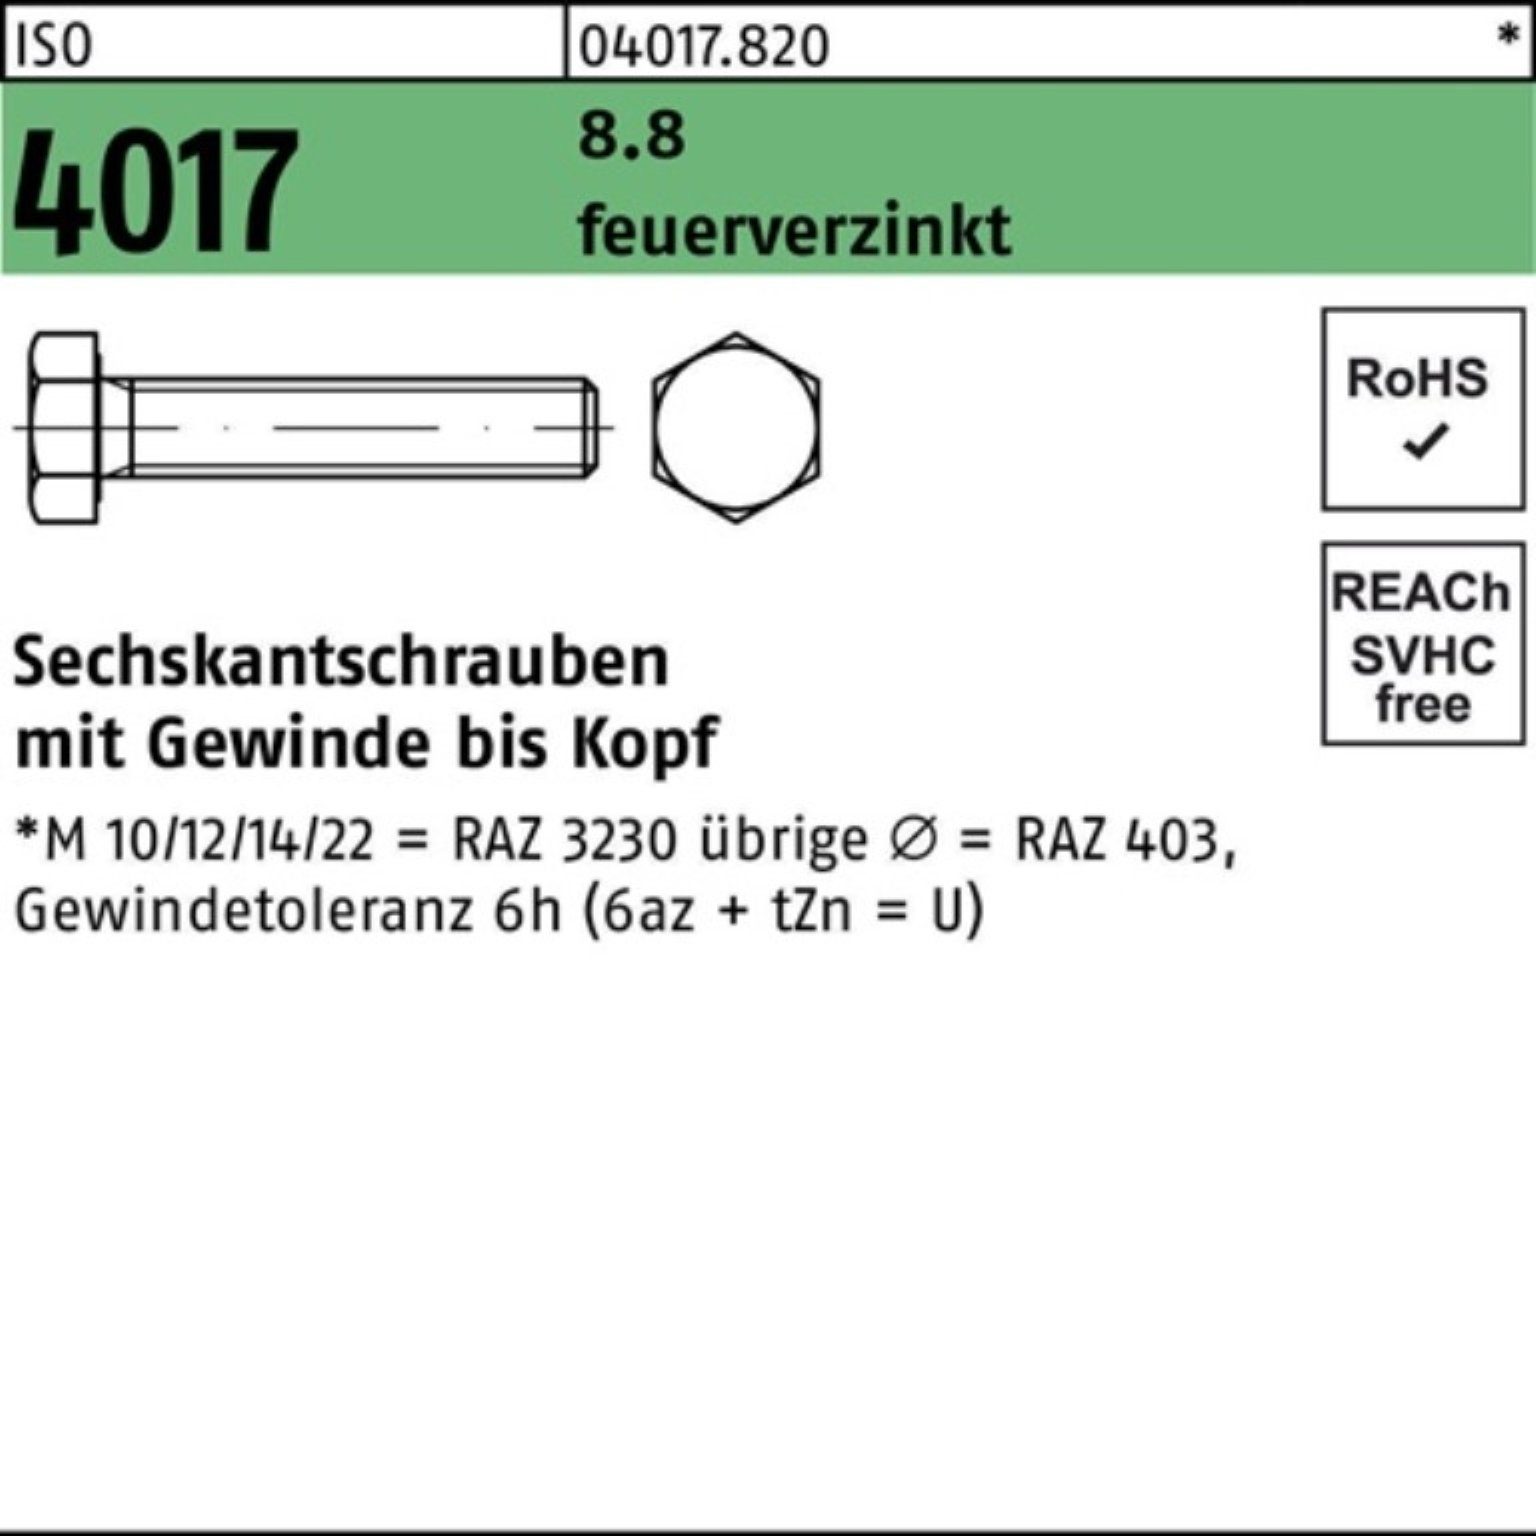 100er Bufab Sechskantschraube VG 8.8 4017 Sechskantschraube M16x Pack 110 ISO feuerverz. 25 St